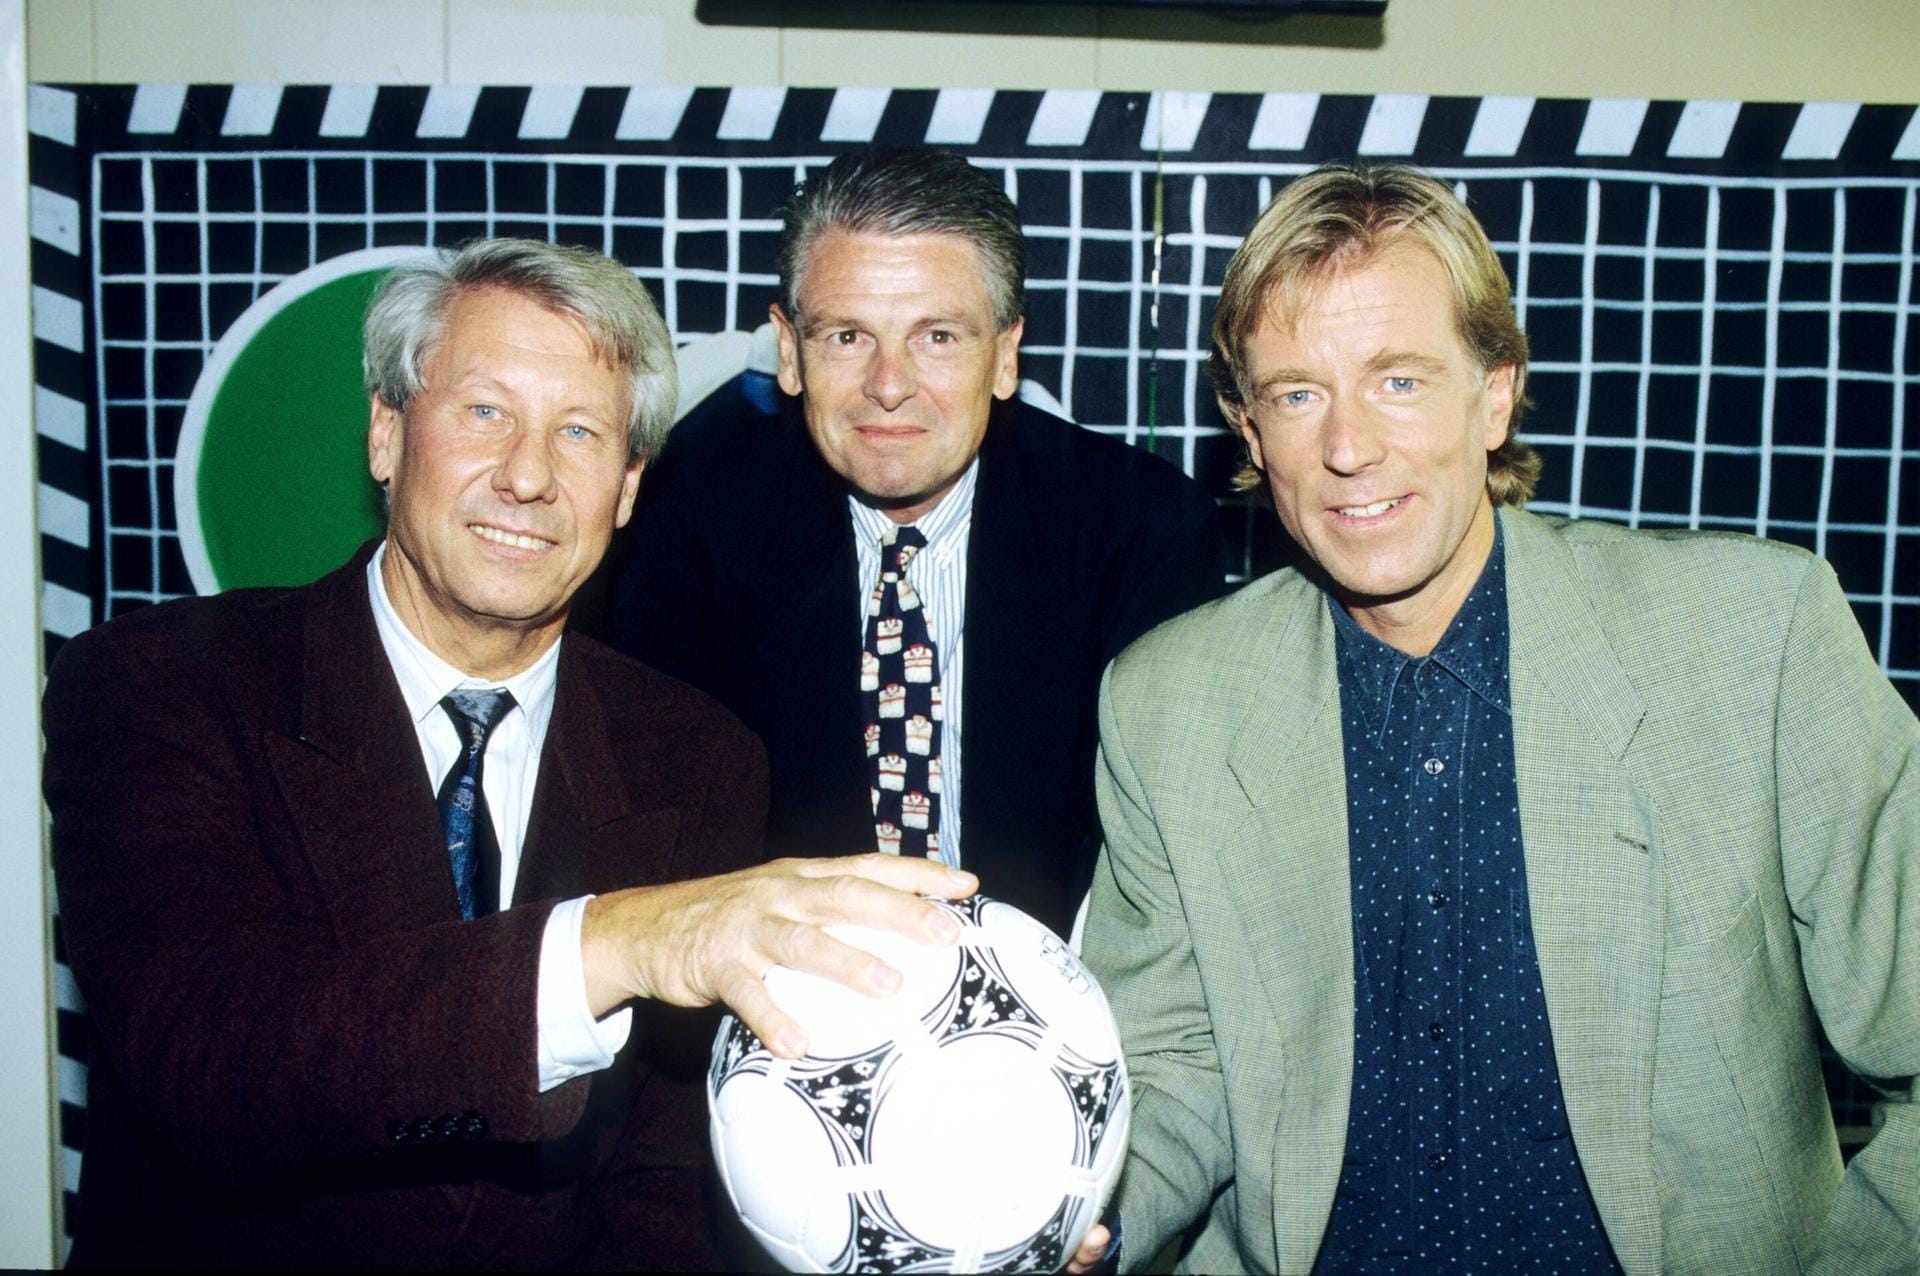 Wolf-Dieter Poschmann (r.) im Jahr 1994 neben Moderator Karl Senne (l.) und dem damaligen ZDF-Chefredakteur Klaus Bresser. Es war das erste Jahr seiner Moderation beim "aktuellen sportstudio".